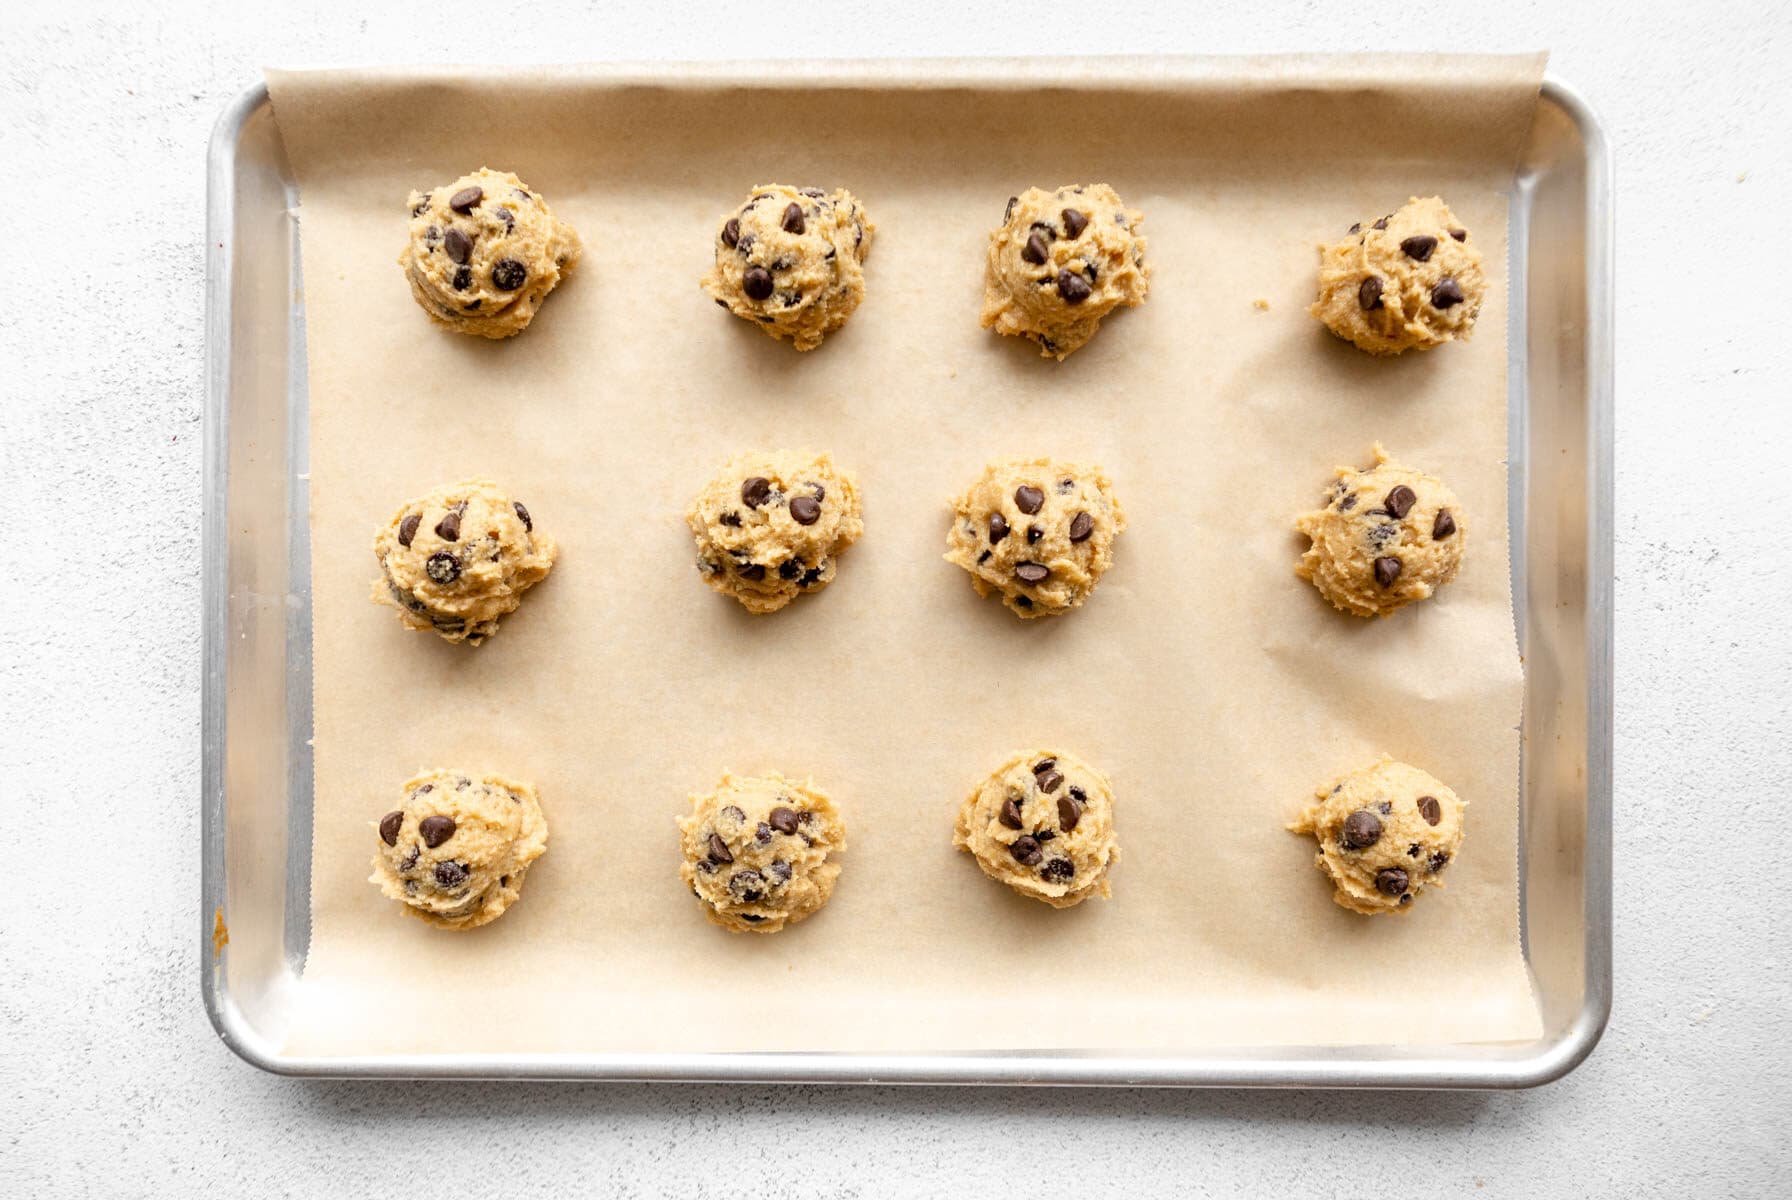 almond flour cookie dough balls on a baking sheet.